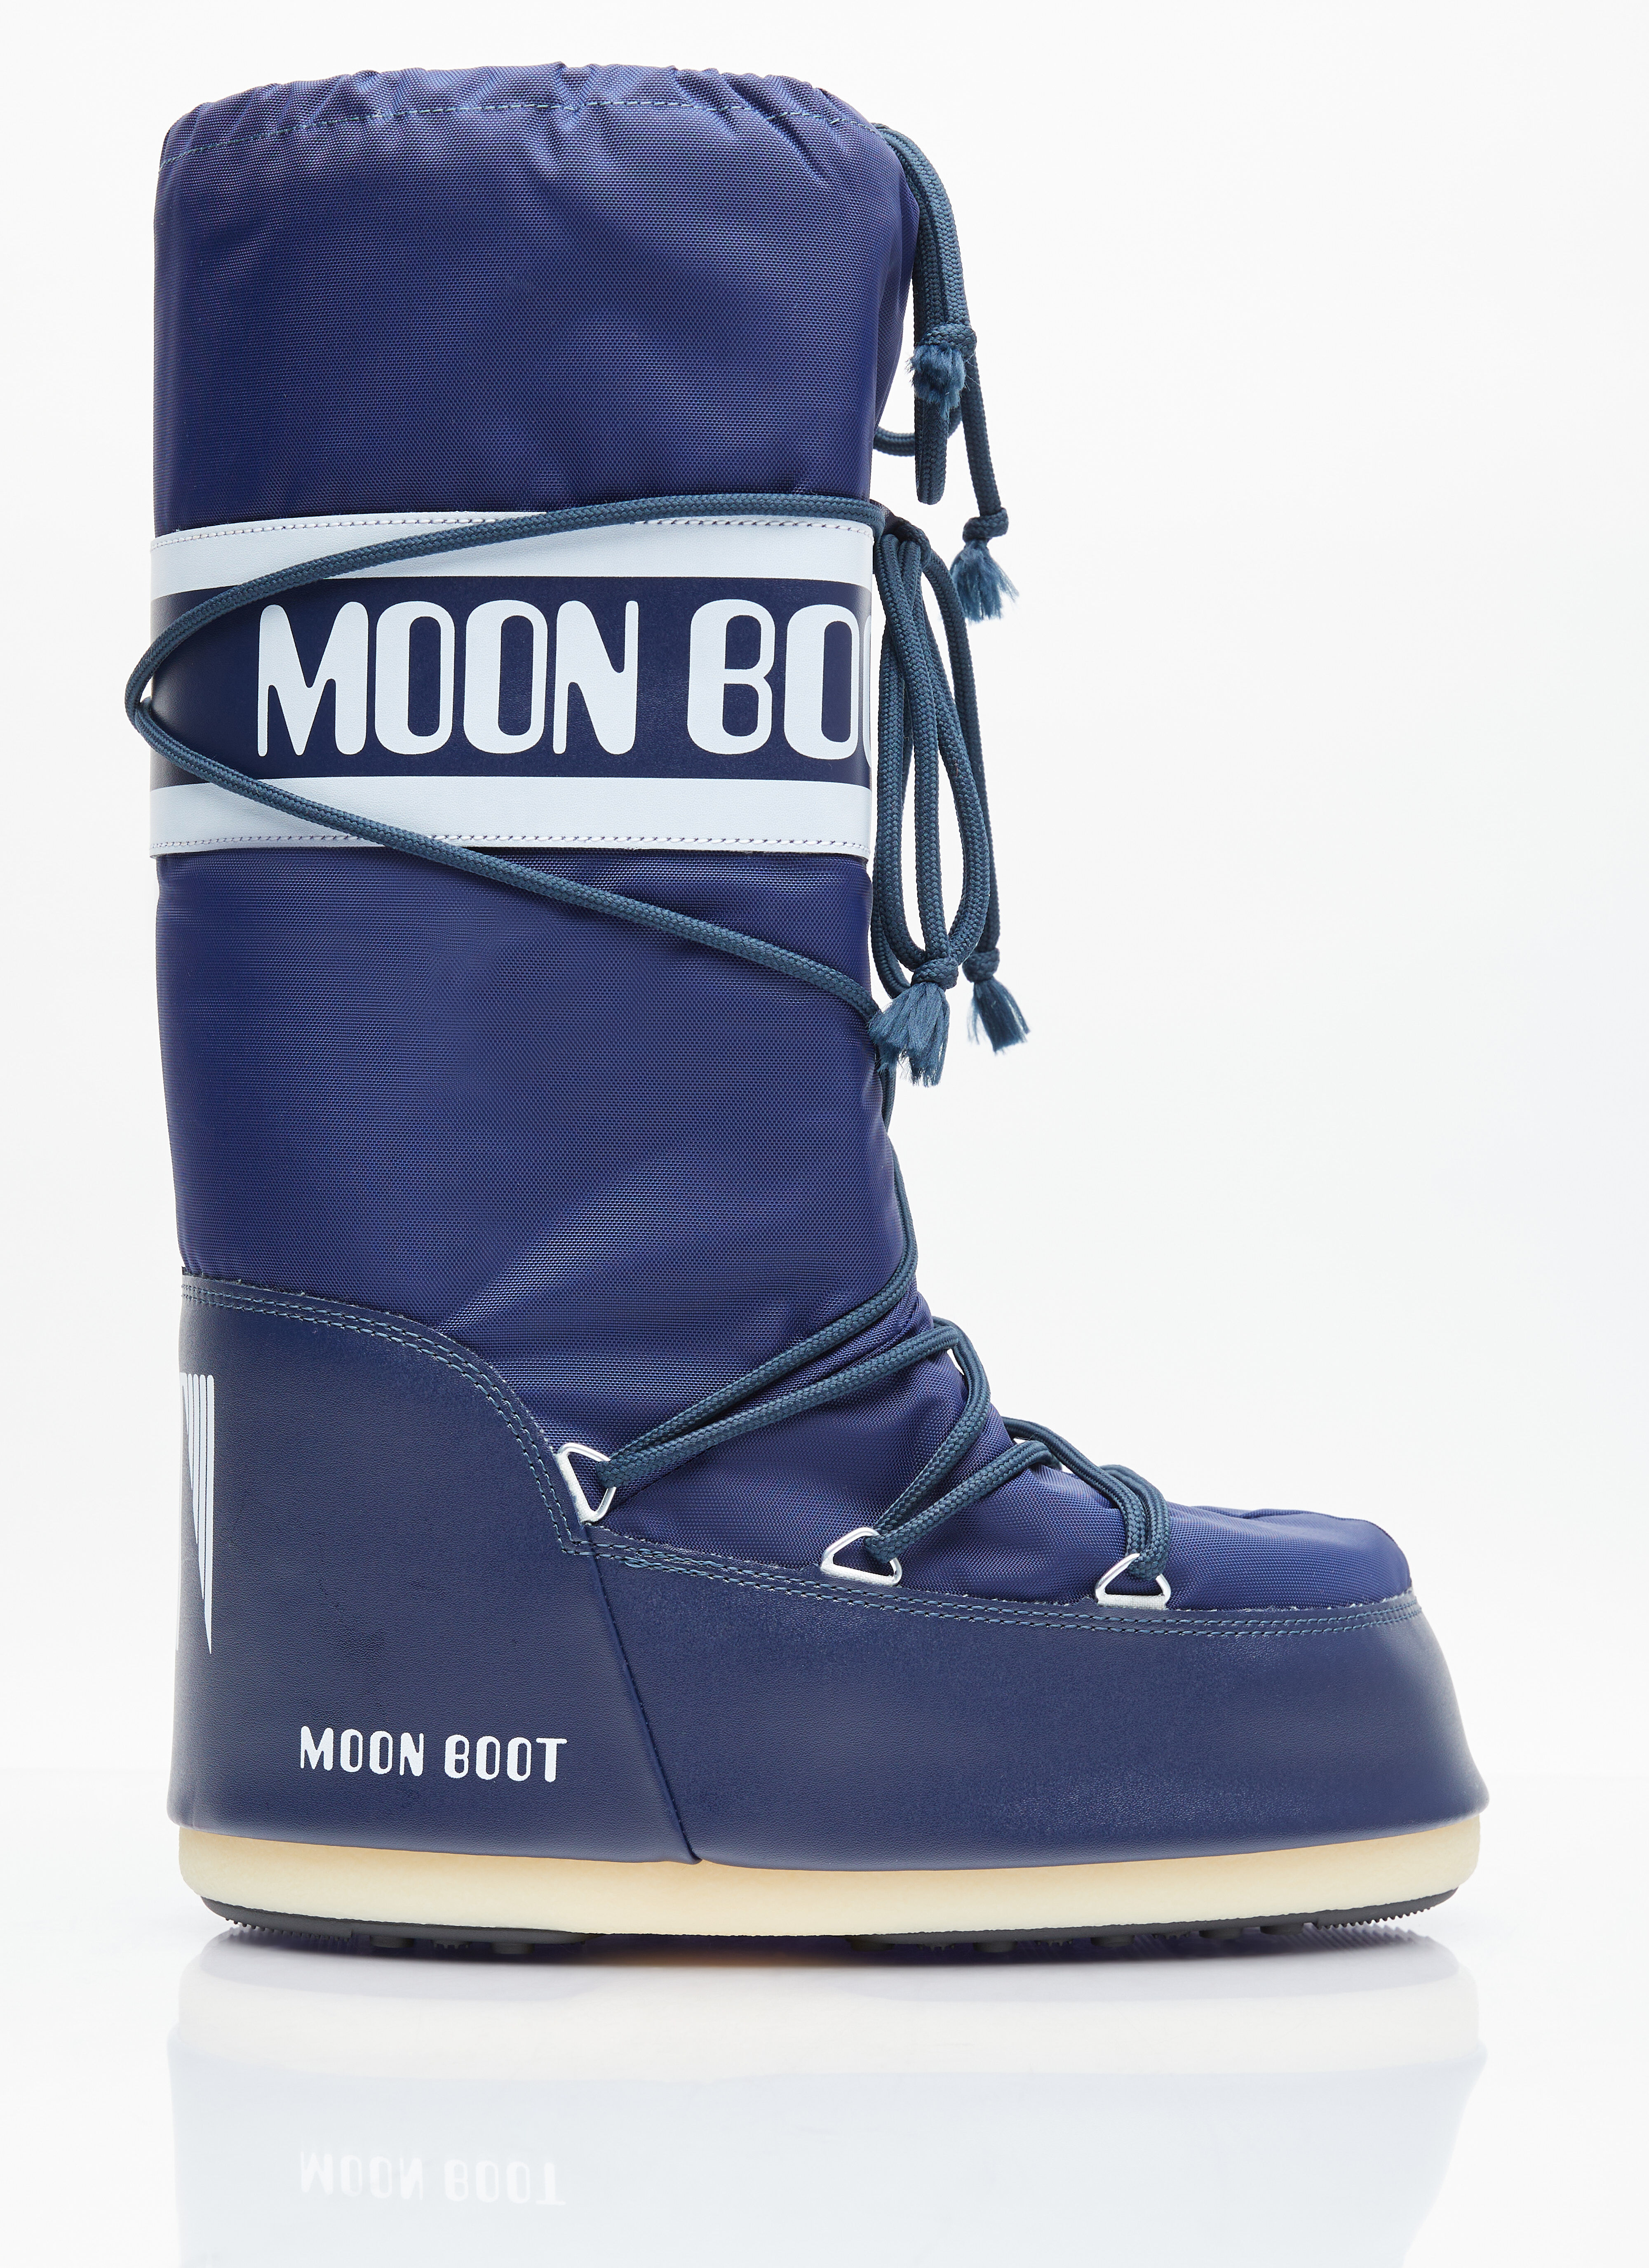 Moon Boot アイコンナイロンブーツ ブラウン mnb0355002